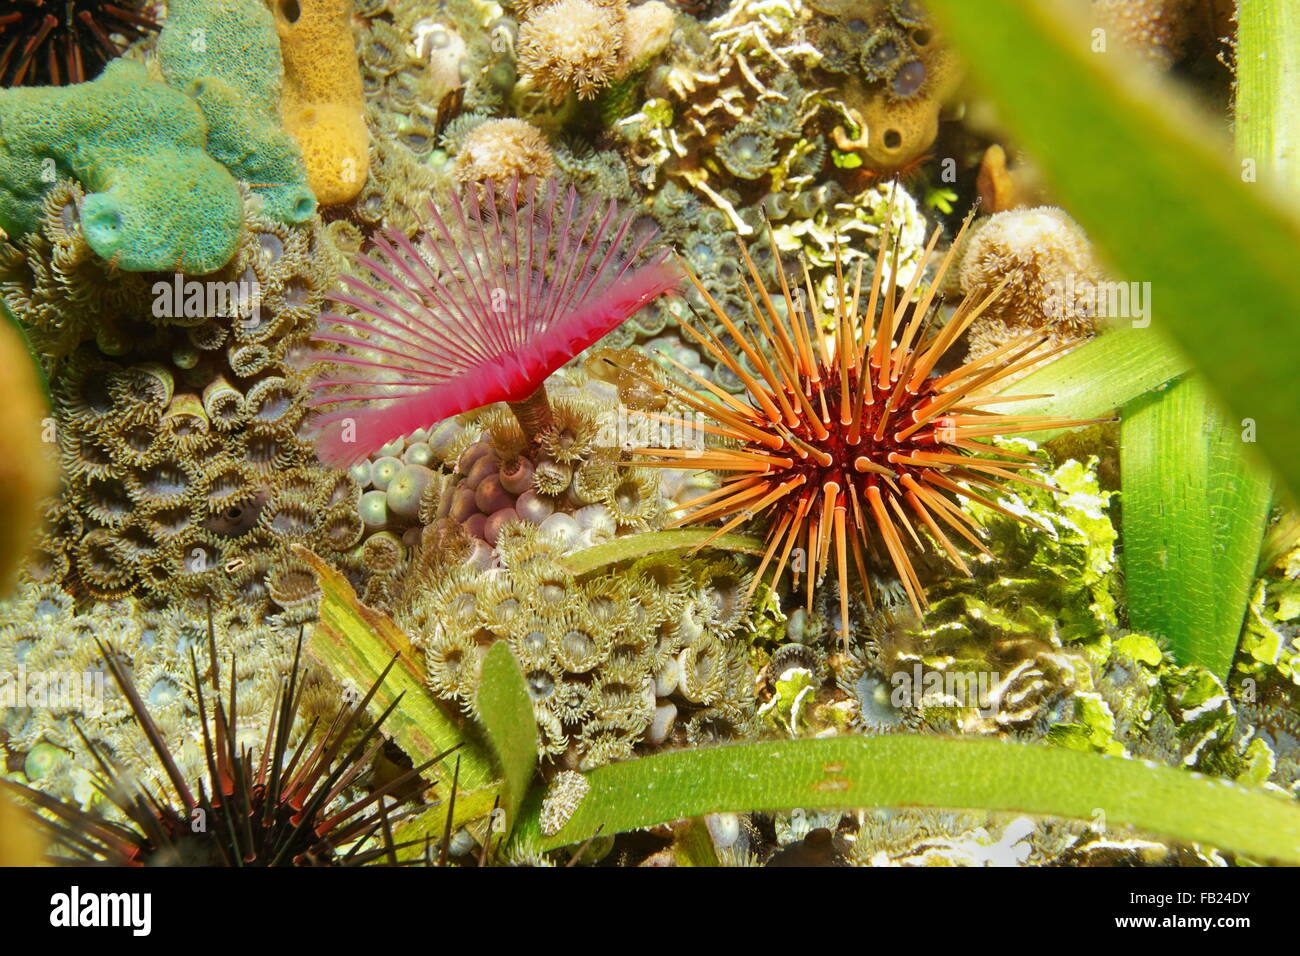 La vie sur les fonds marins de la mer de corail, avec l'oursin split-couronne plumeau ver et mat zoanthid, mer des Caraïbes, l'Amérique centrale Banque D'Images